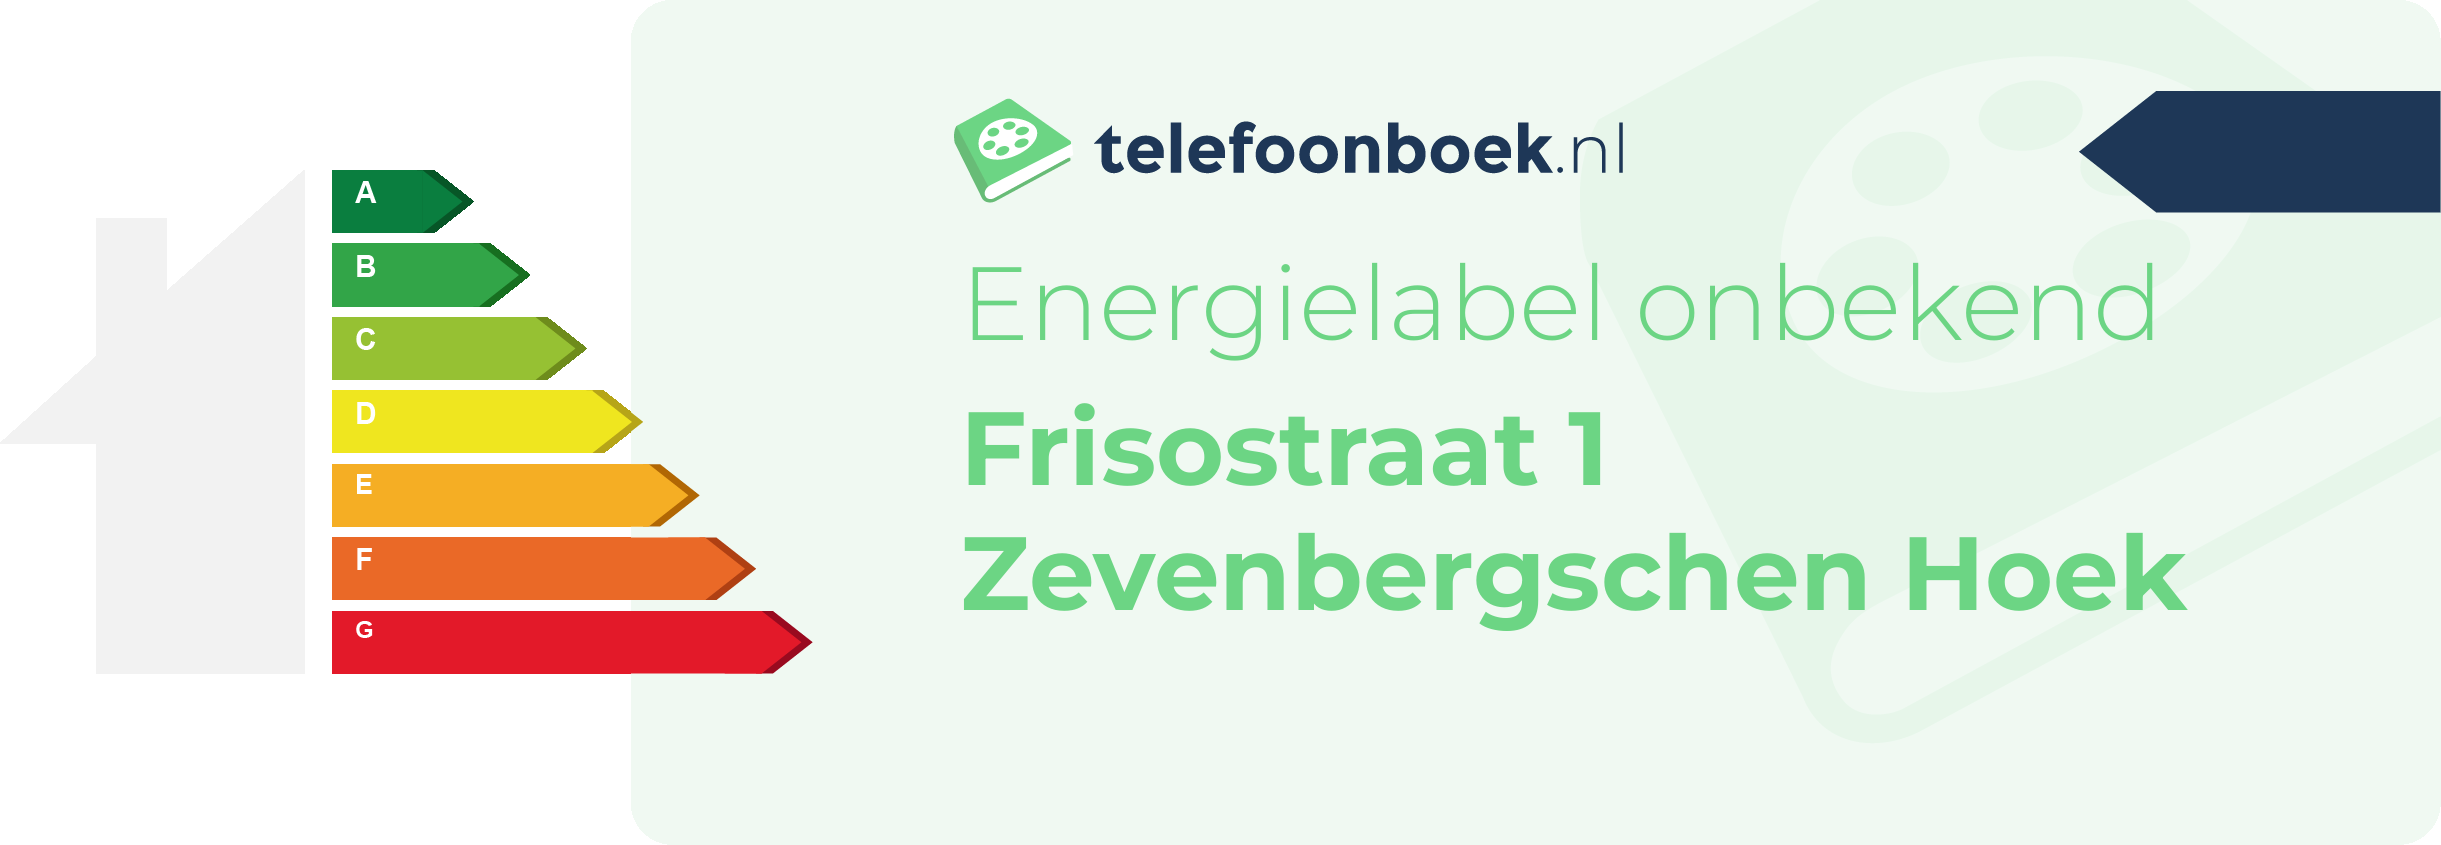 Energielabel Frisostraat 1 Zevenbergschen Hoek